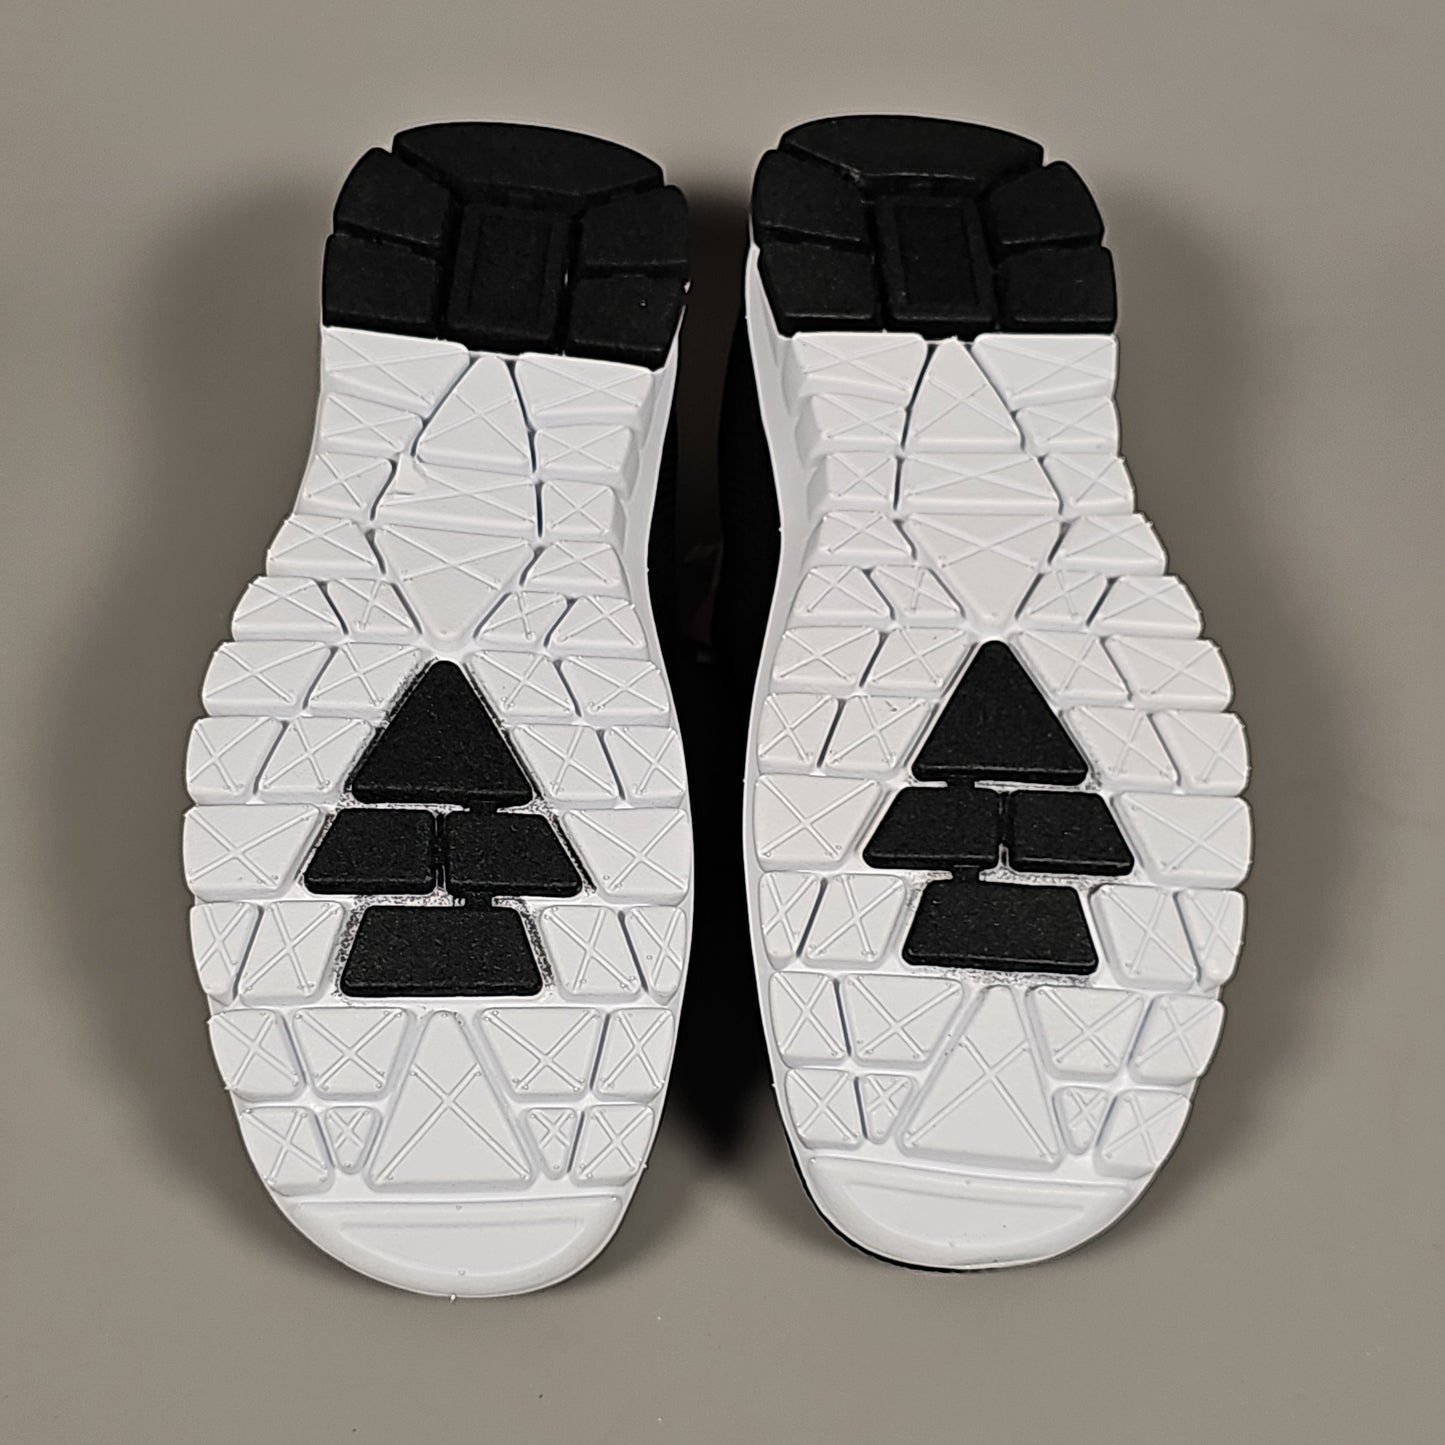 DEER STAGS Eddy Men's Slip-On Shoe Sneaker Sz 9.5 Black (New)